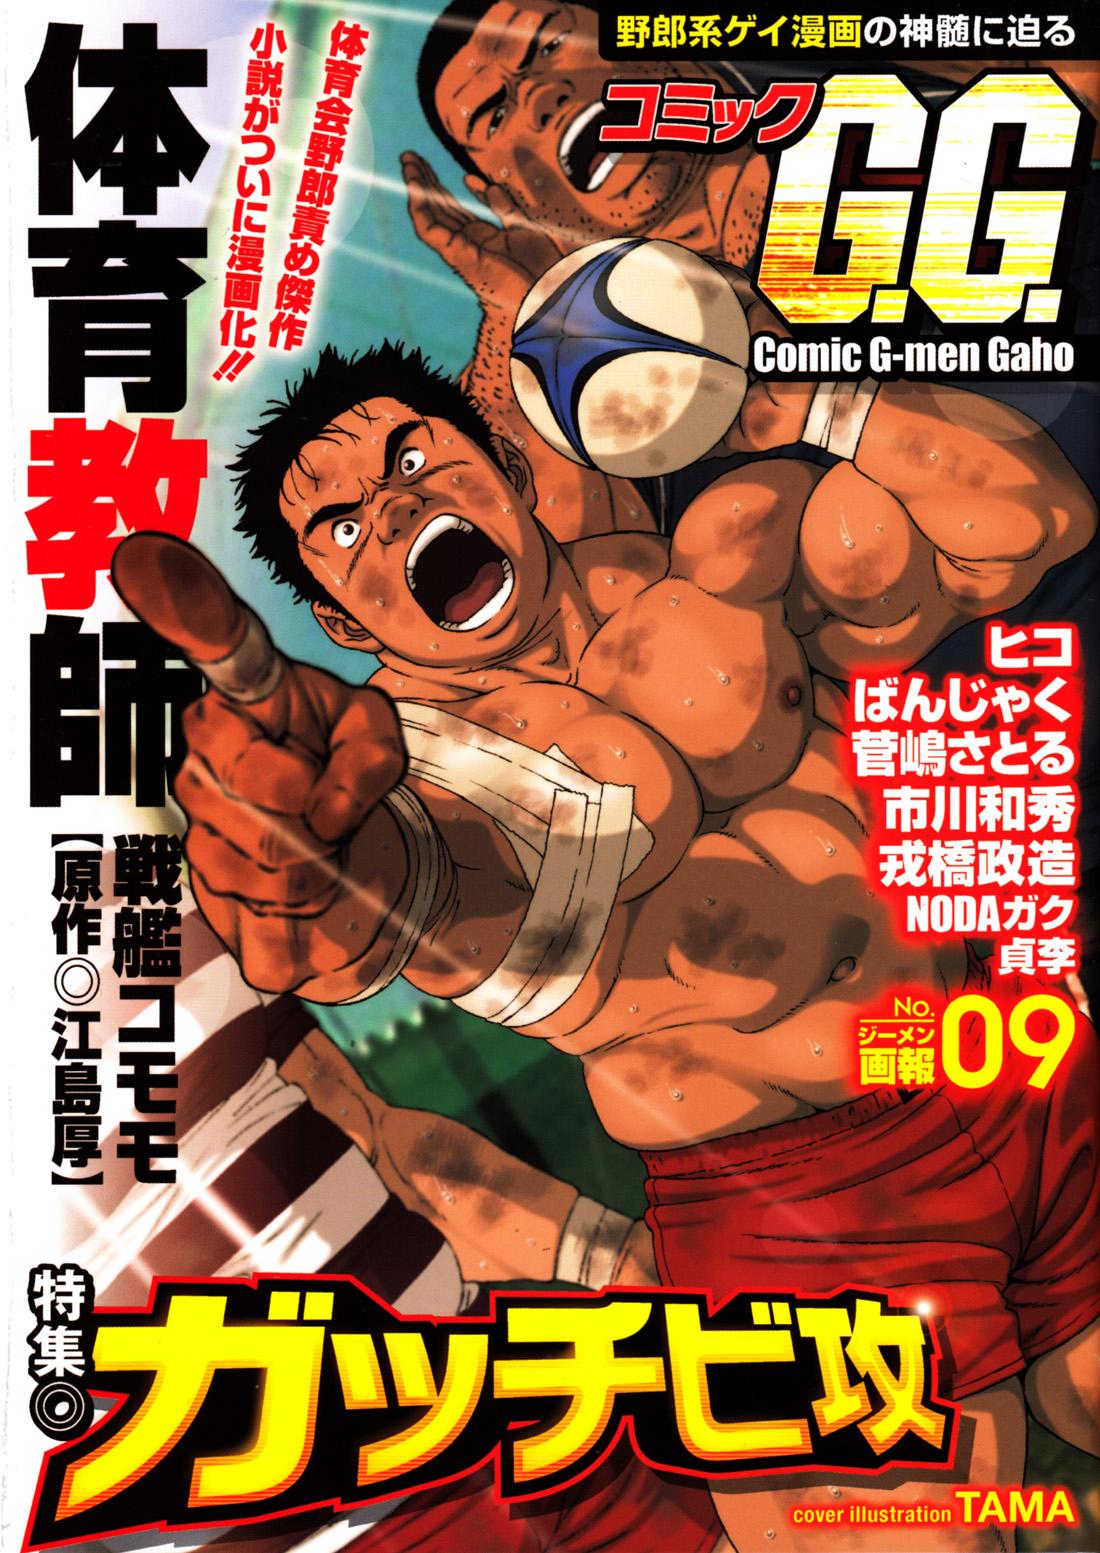 Comic G-men Gaho No.09 Gacchibi Zeme 1